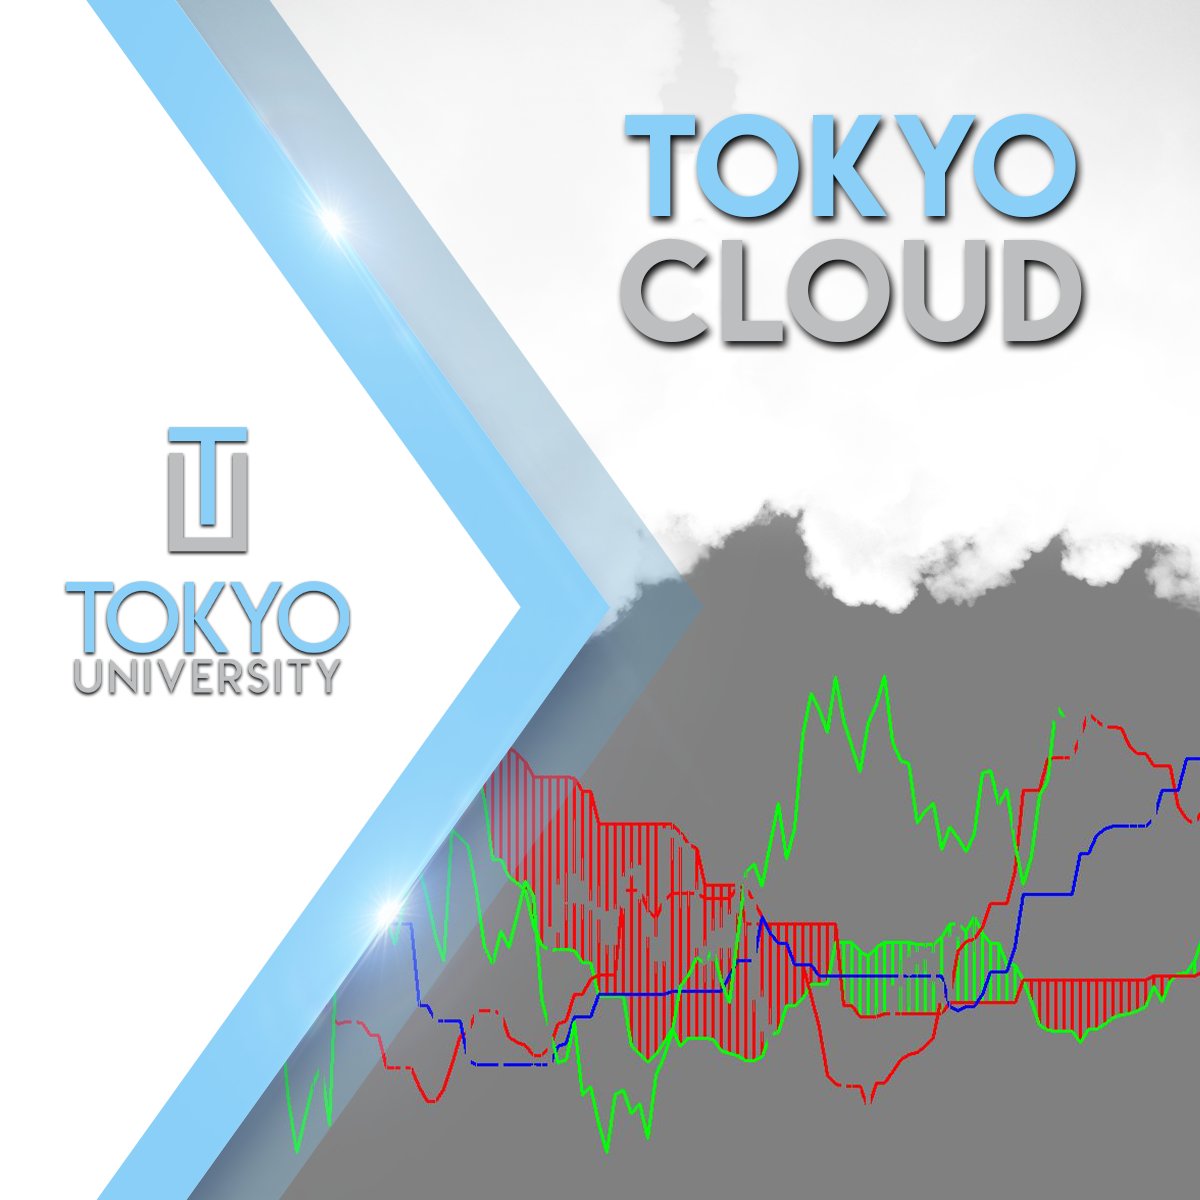 Tokyo Cloud